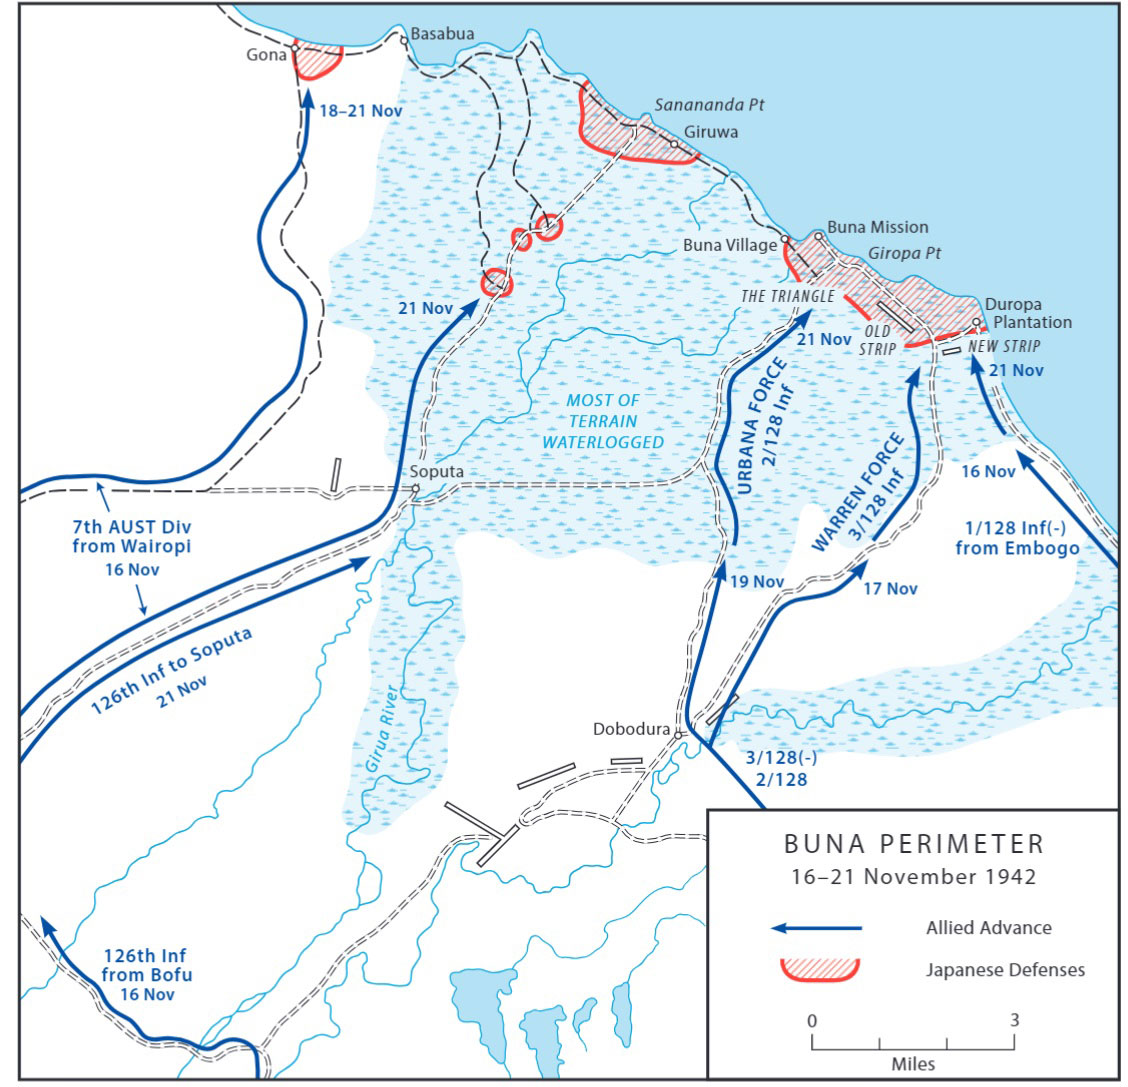 Map of Buna Perimeter 16-21 November 1942.